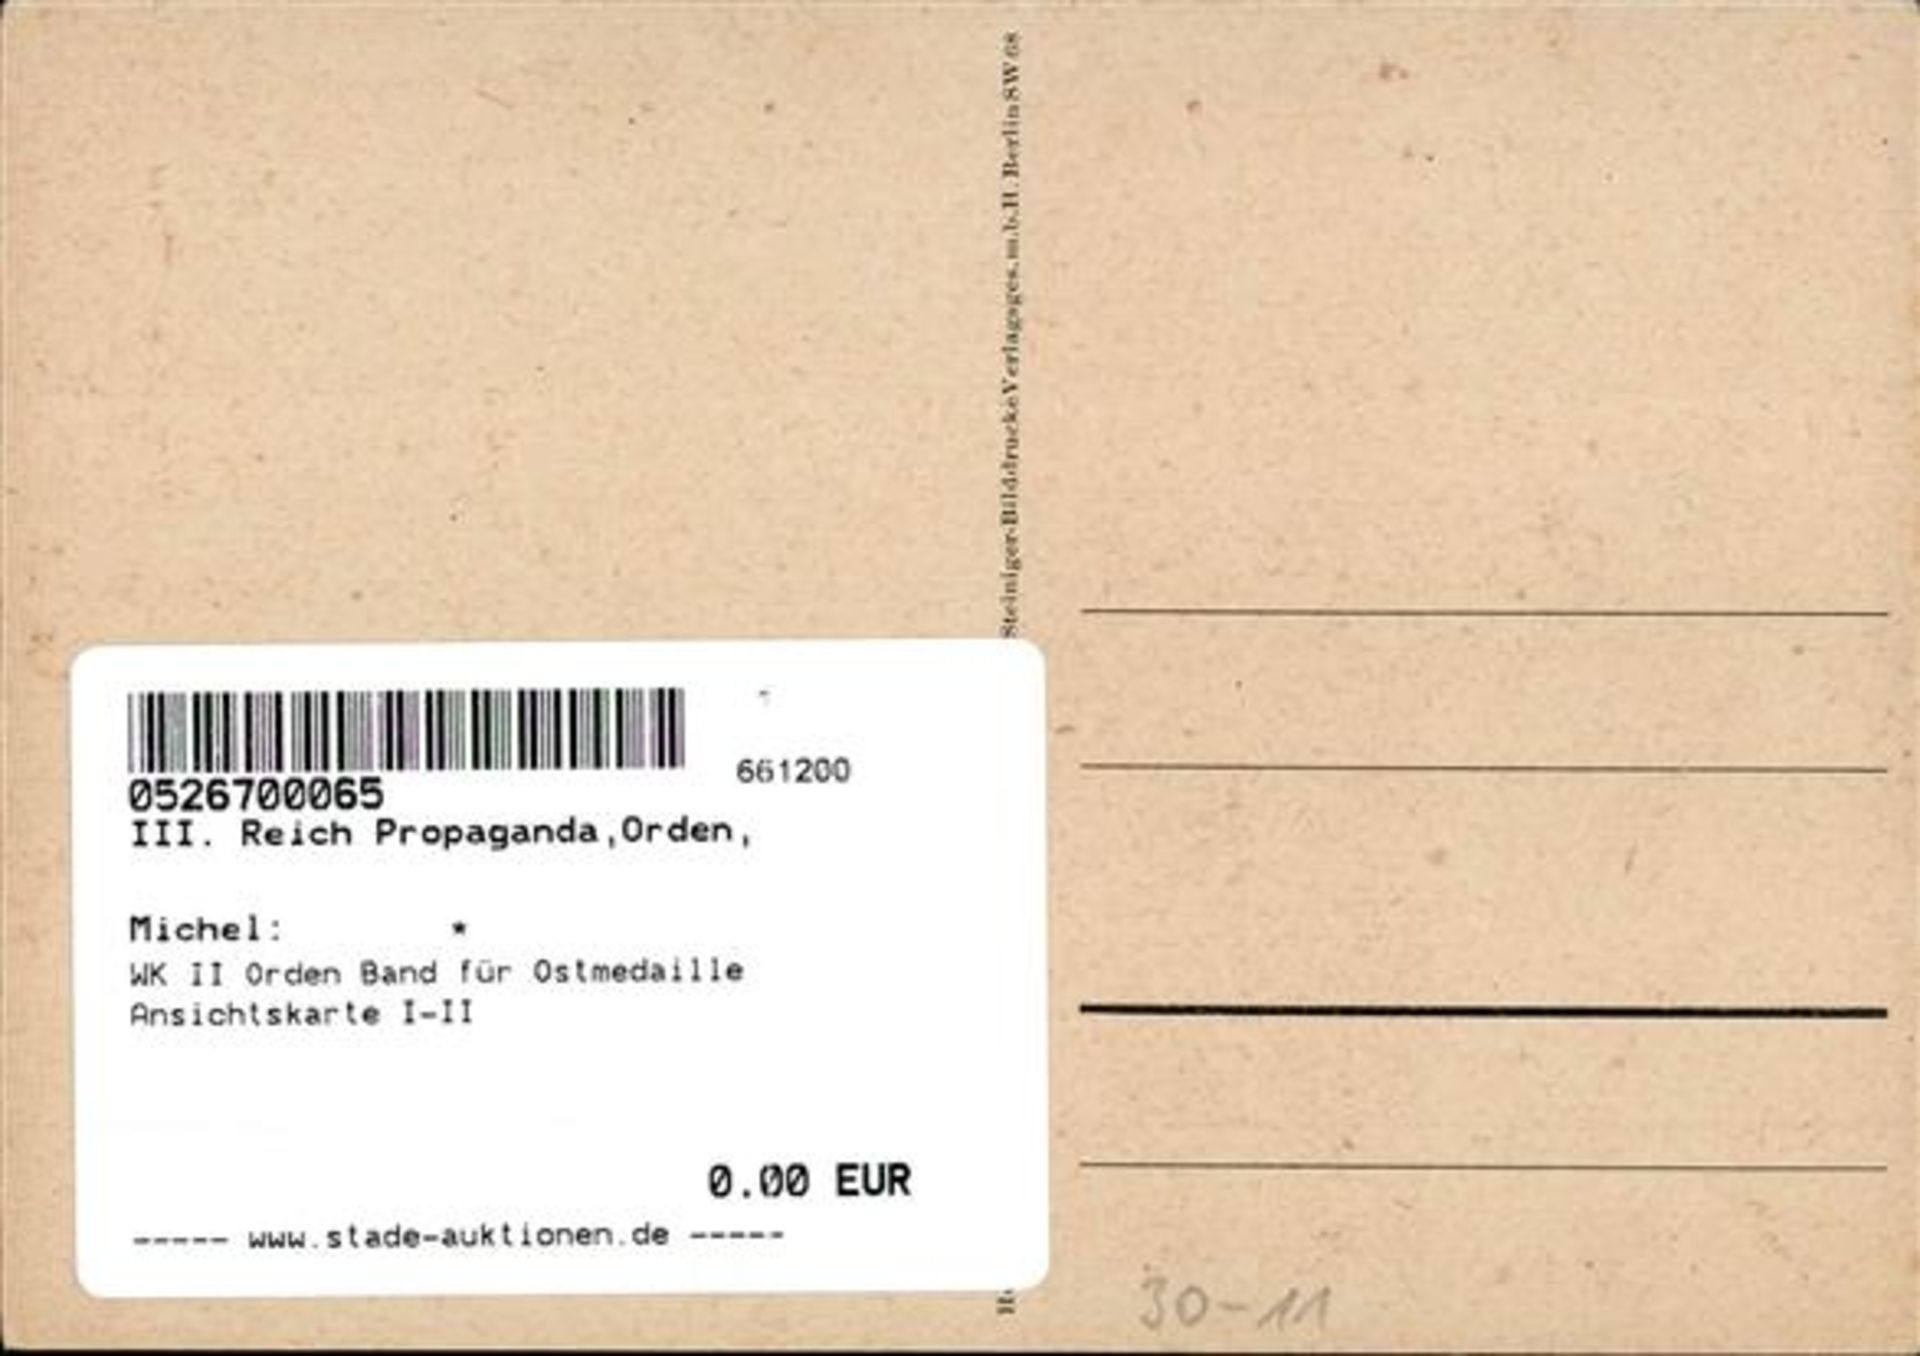 WK II Orden Band für Ostmedaille Ansichtskarte I-II - Bild 2 aus 2